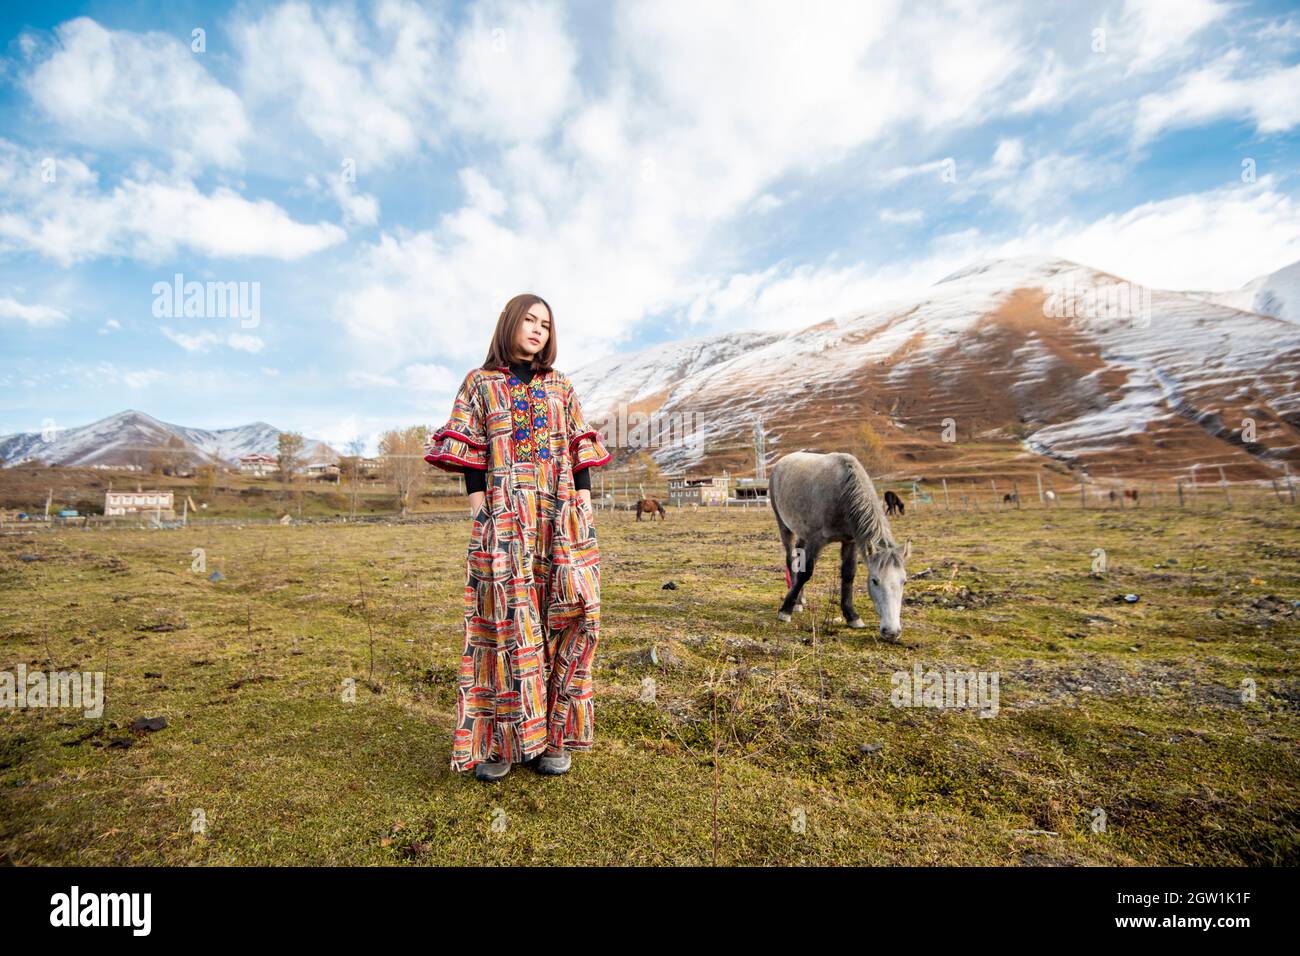 Portrait d'une femme debout sur le terrain contre les montagnes enneigées Banque D'Images